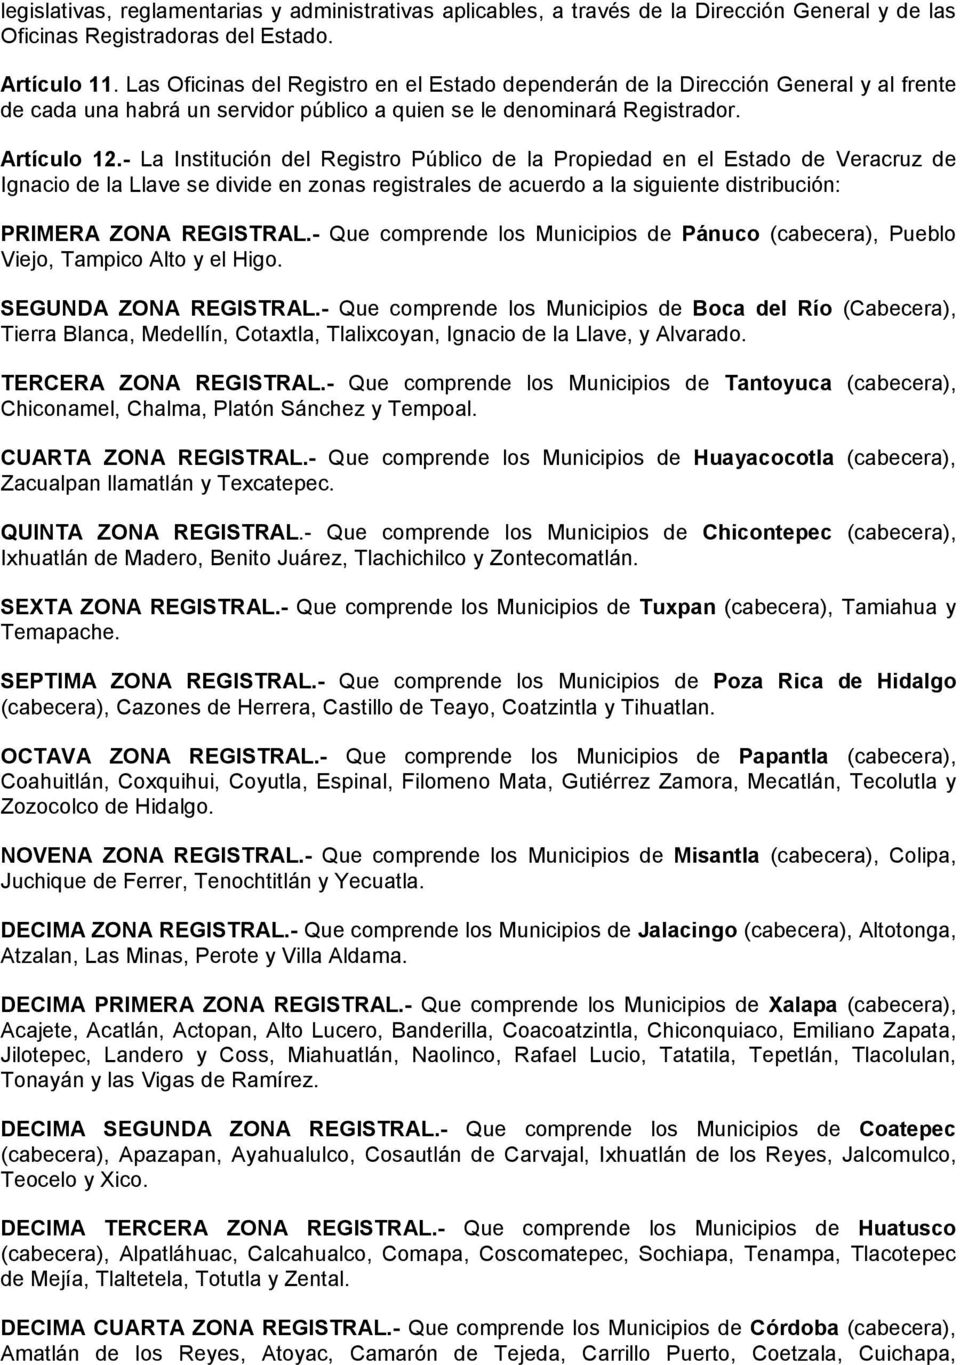 - La Institución del Registro Público de la Propiedad en el Estado de Veracruz de Ignacio de la Llave se divide en zonas registrales de acuerdo a la siguiente distribución: PRIMERA ZONA REGISTRAL.